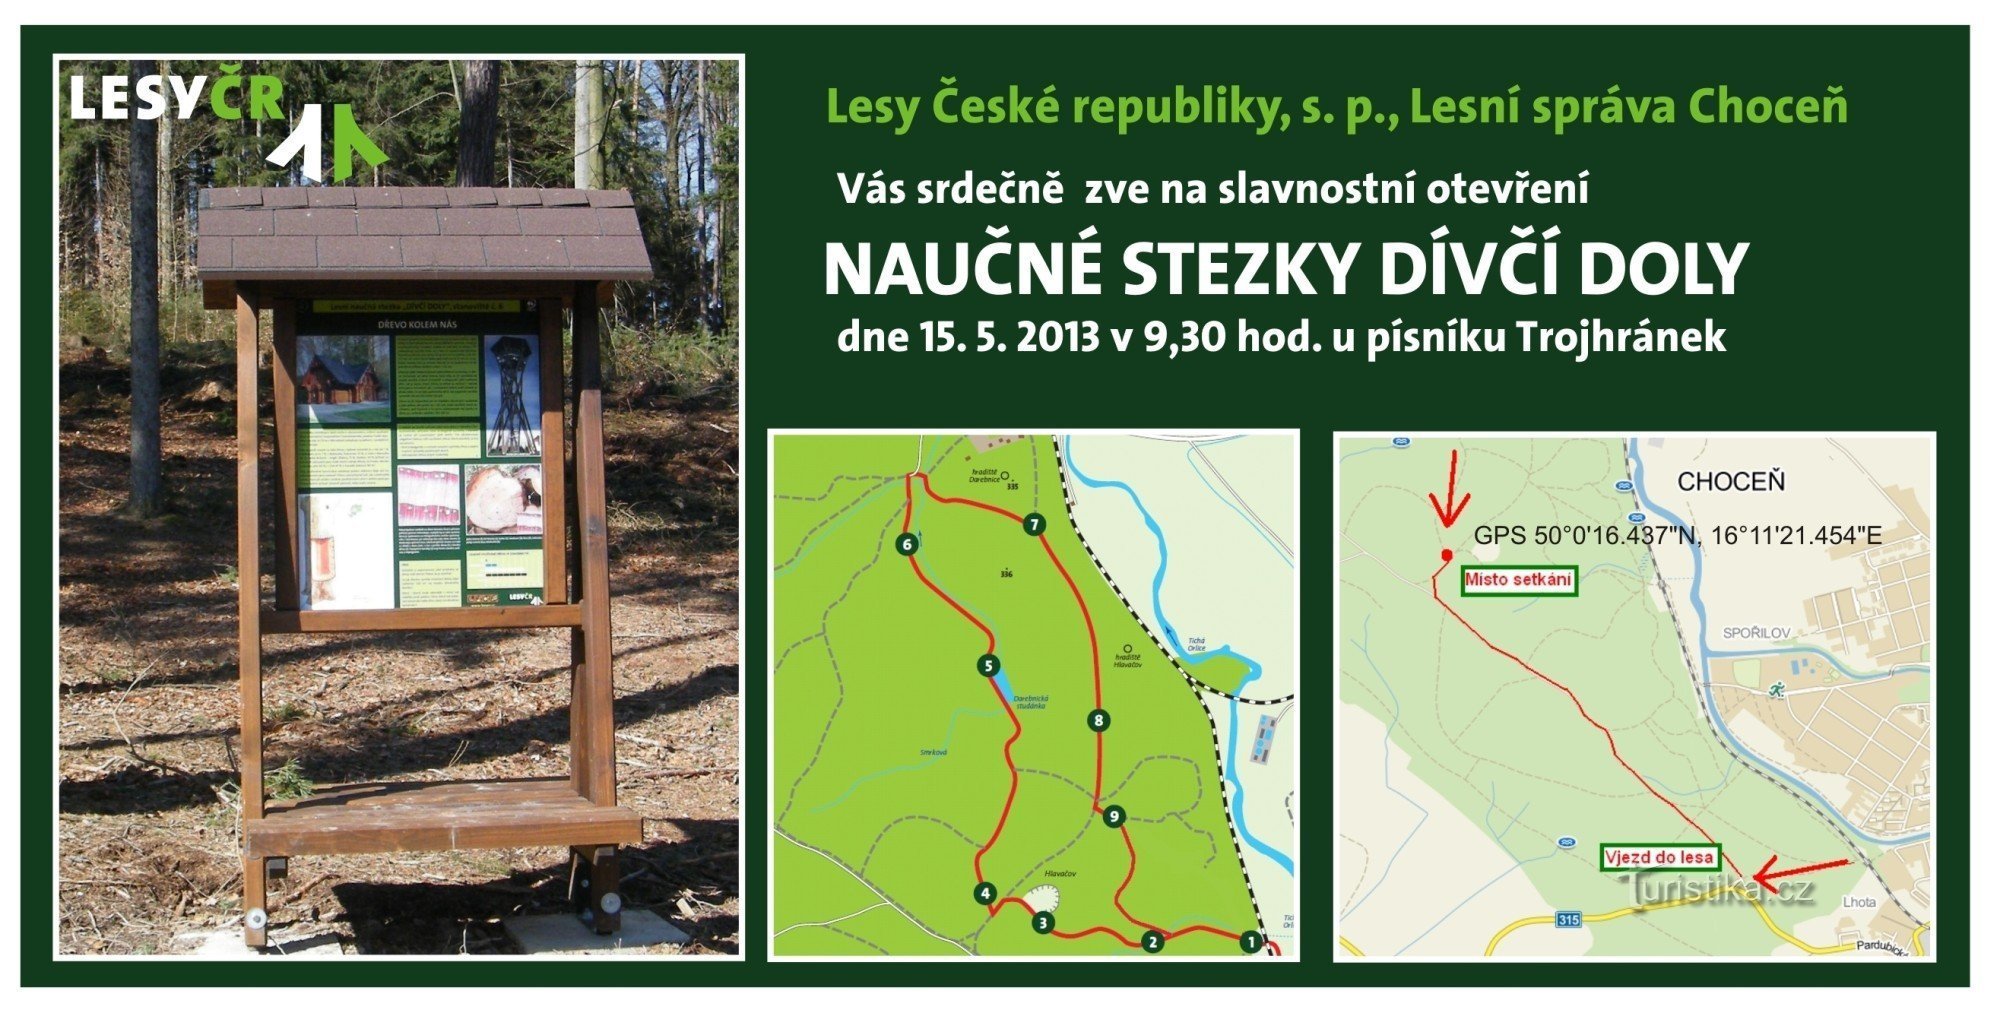 在 Choceňsko Lesy ČR 开辟了一条新的教育路径 Dívčí doly